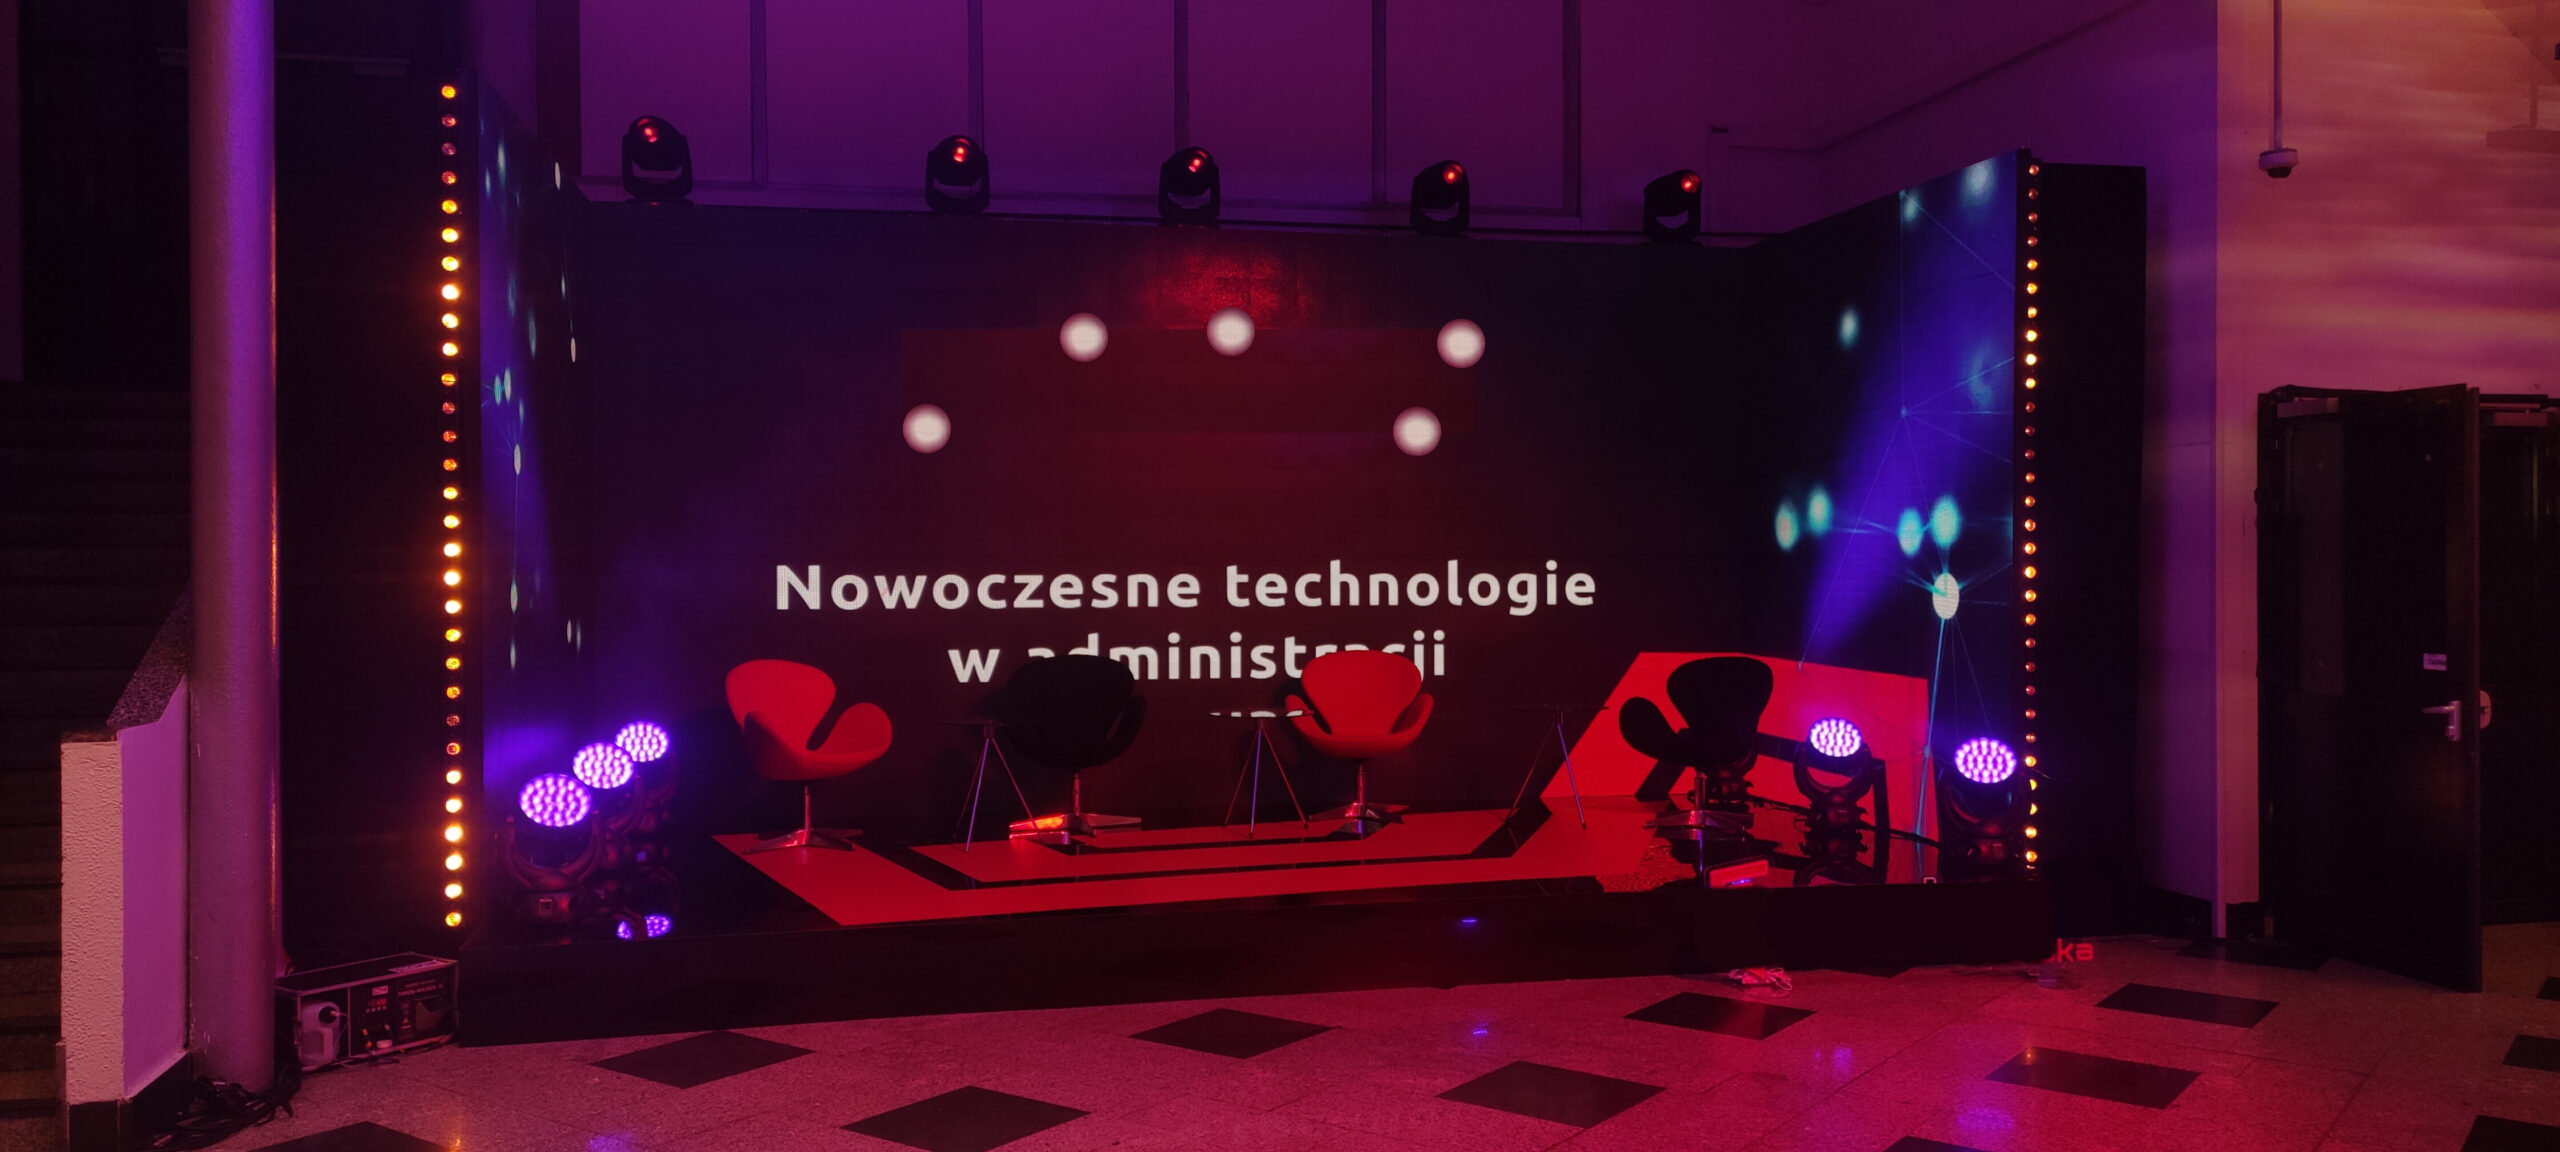 Ekran LED na evencie w Katowickim Spodku